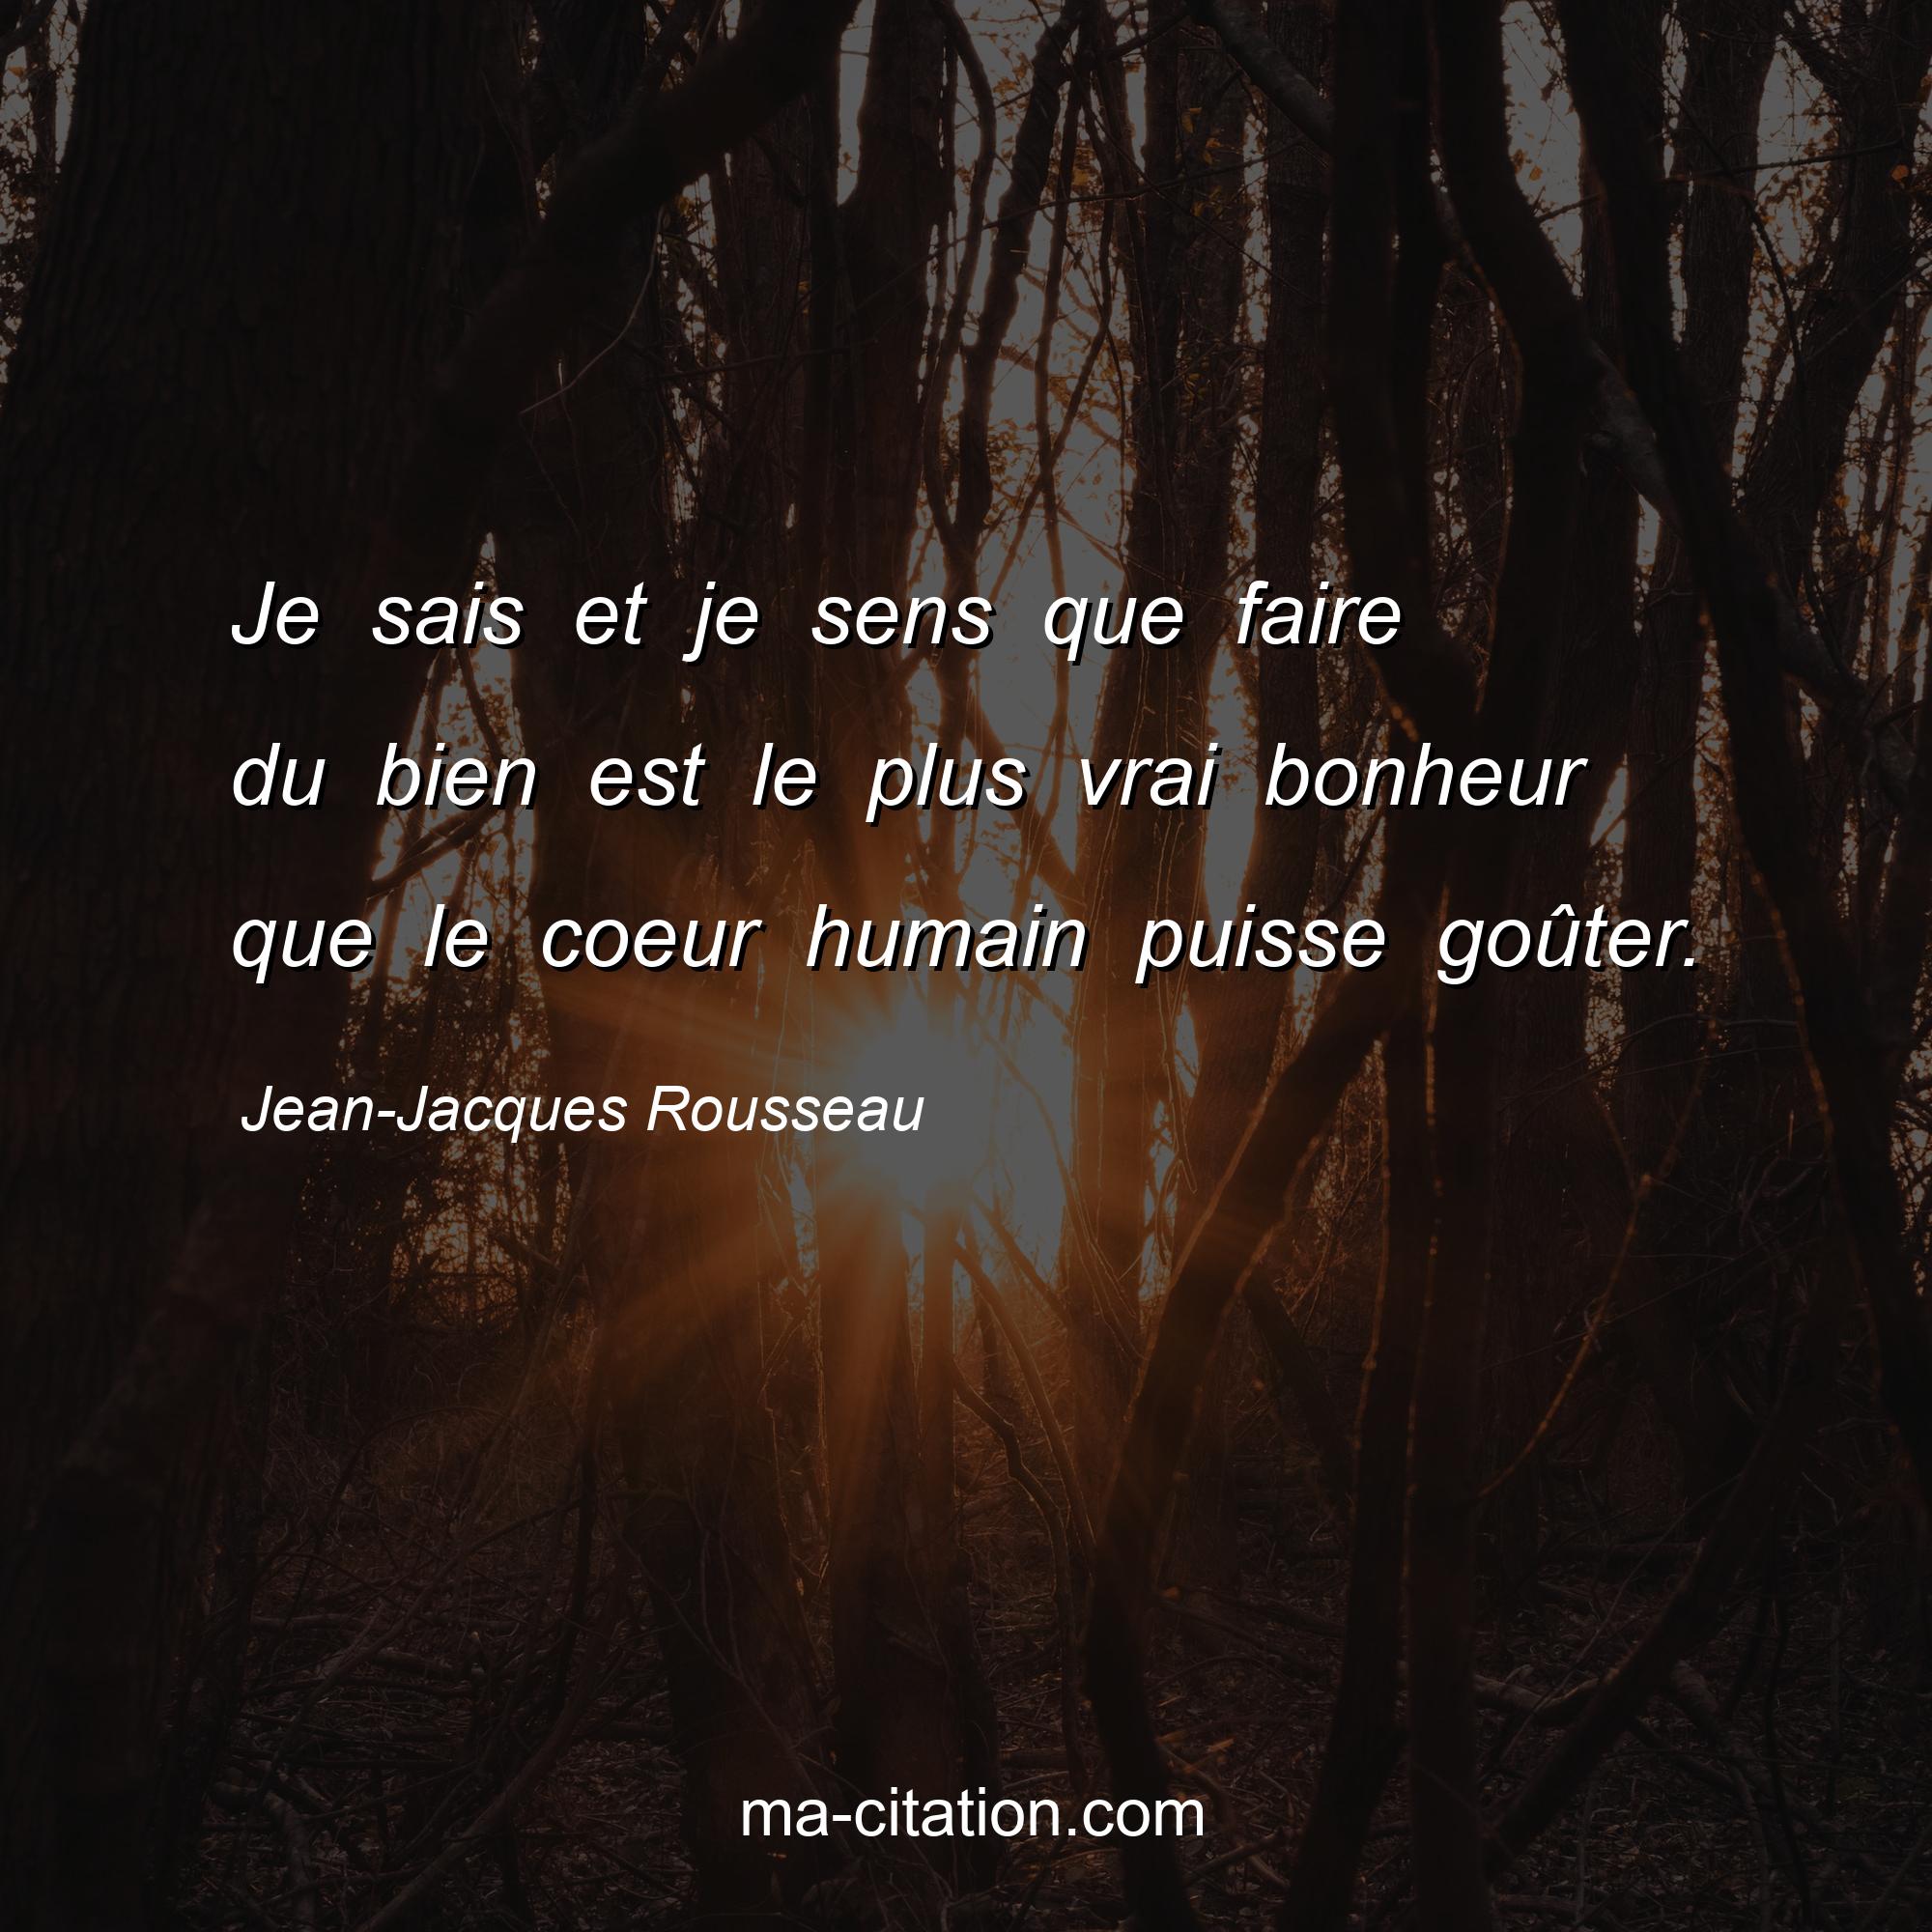 Jean-Jacques Rousseau : Je sais et je sens que faire du bien est le plus vrai bonheur que le coeur humain puisse goûter.